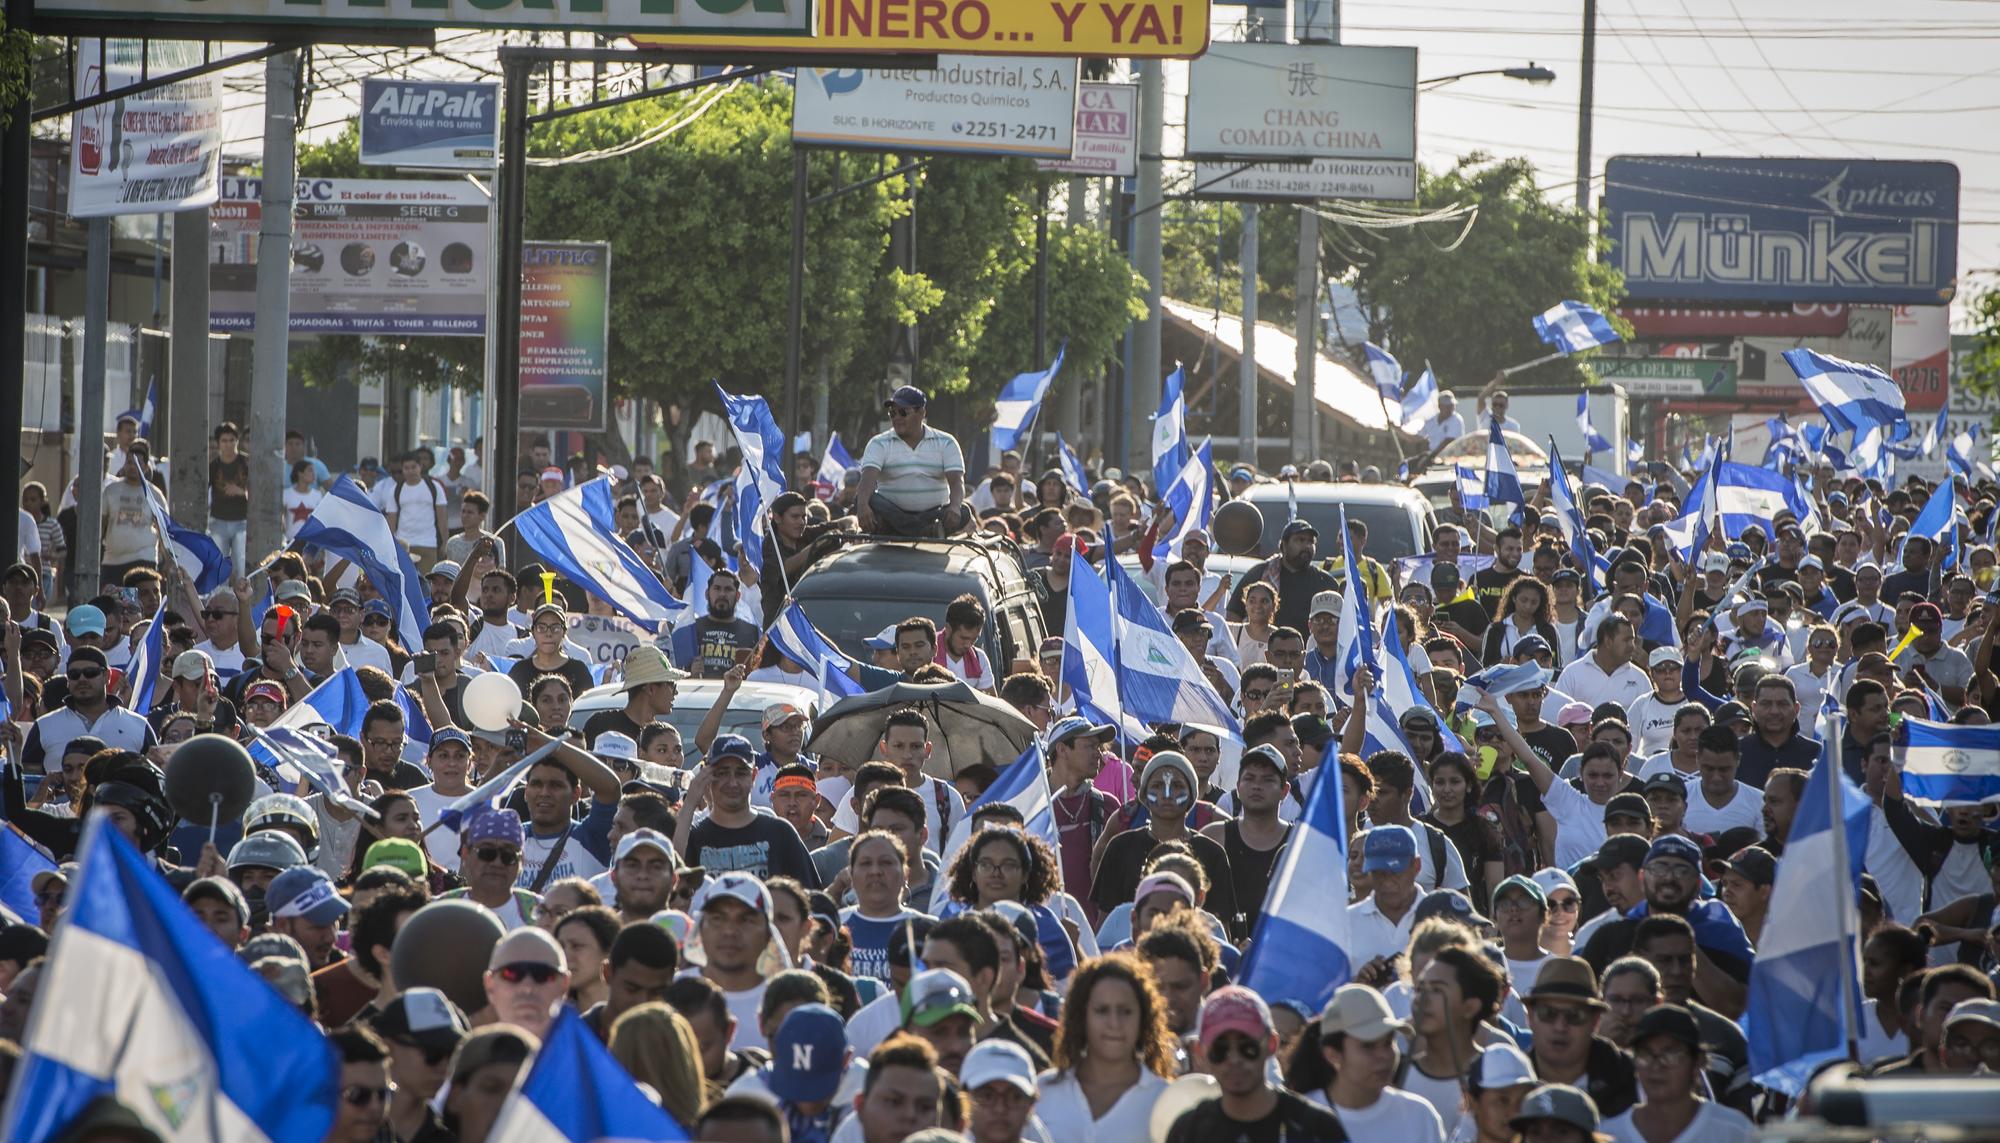 Upoli Nicaragua, movimiento estudiantil